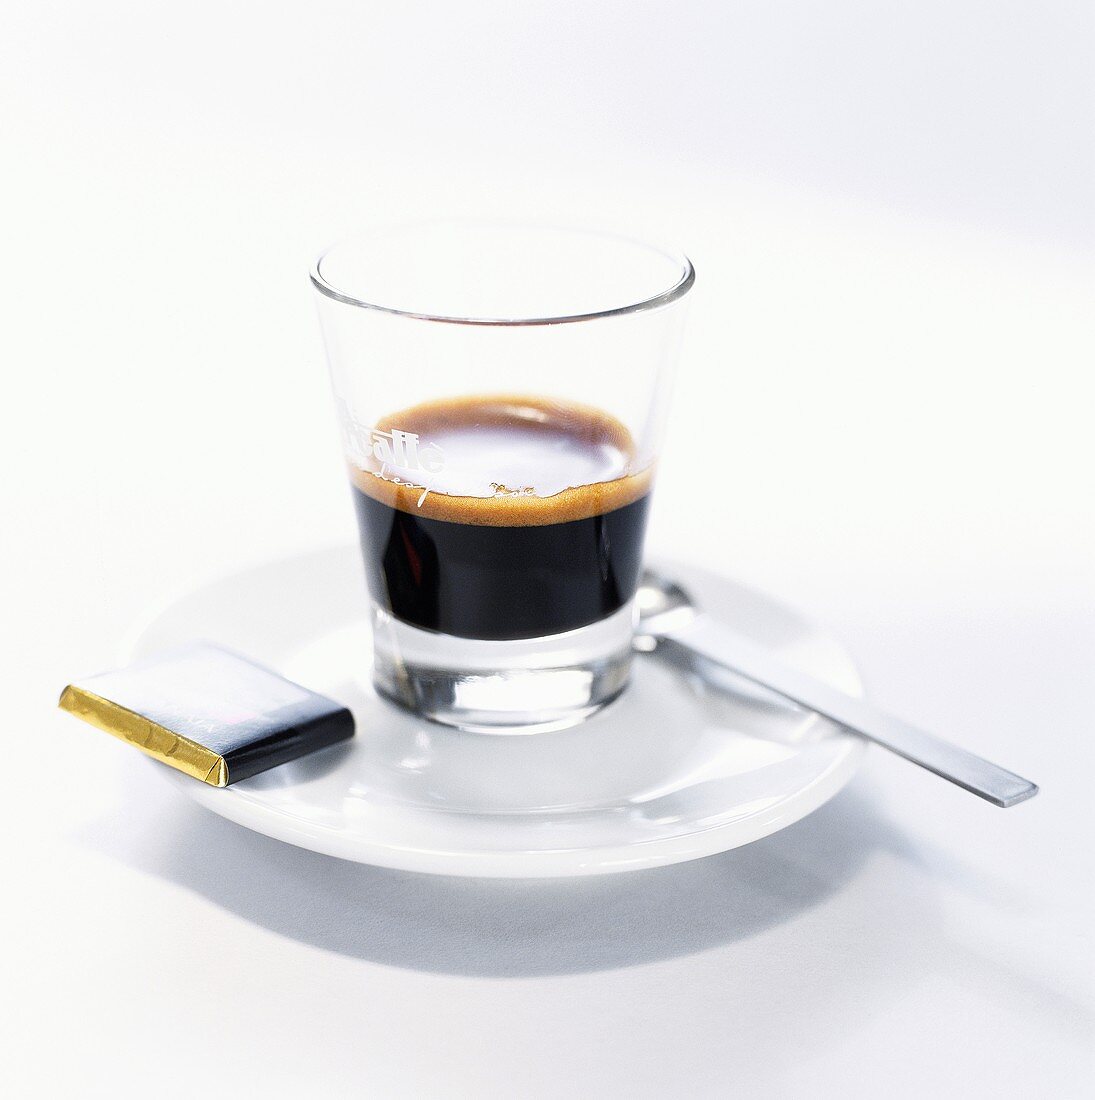 Espresso served in a glass